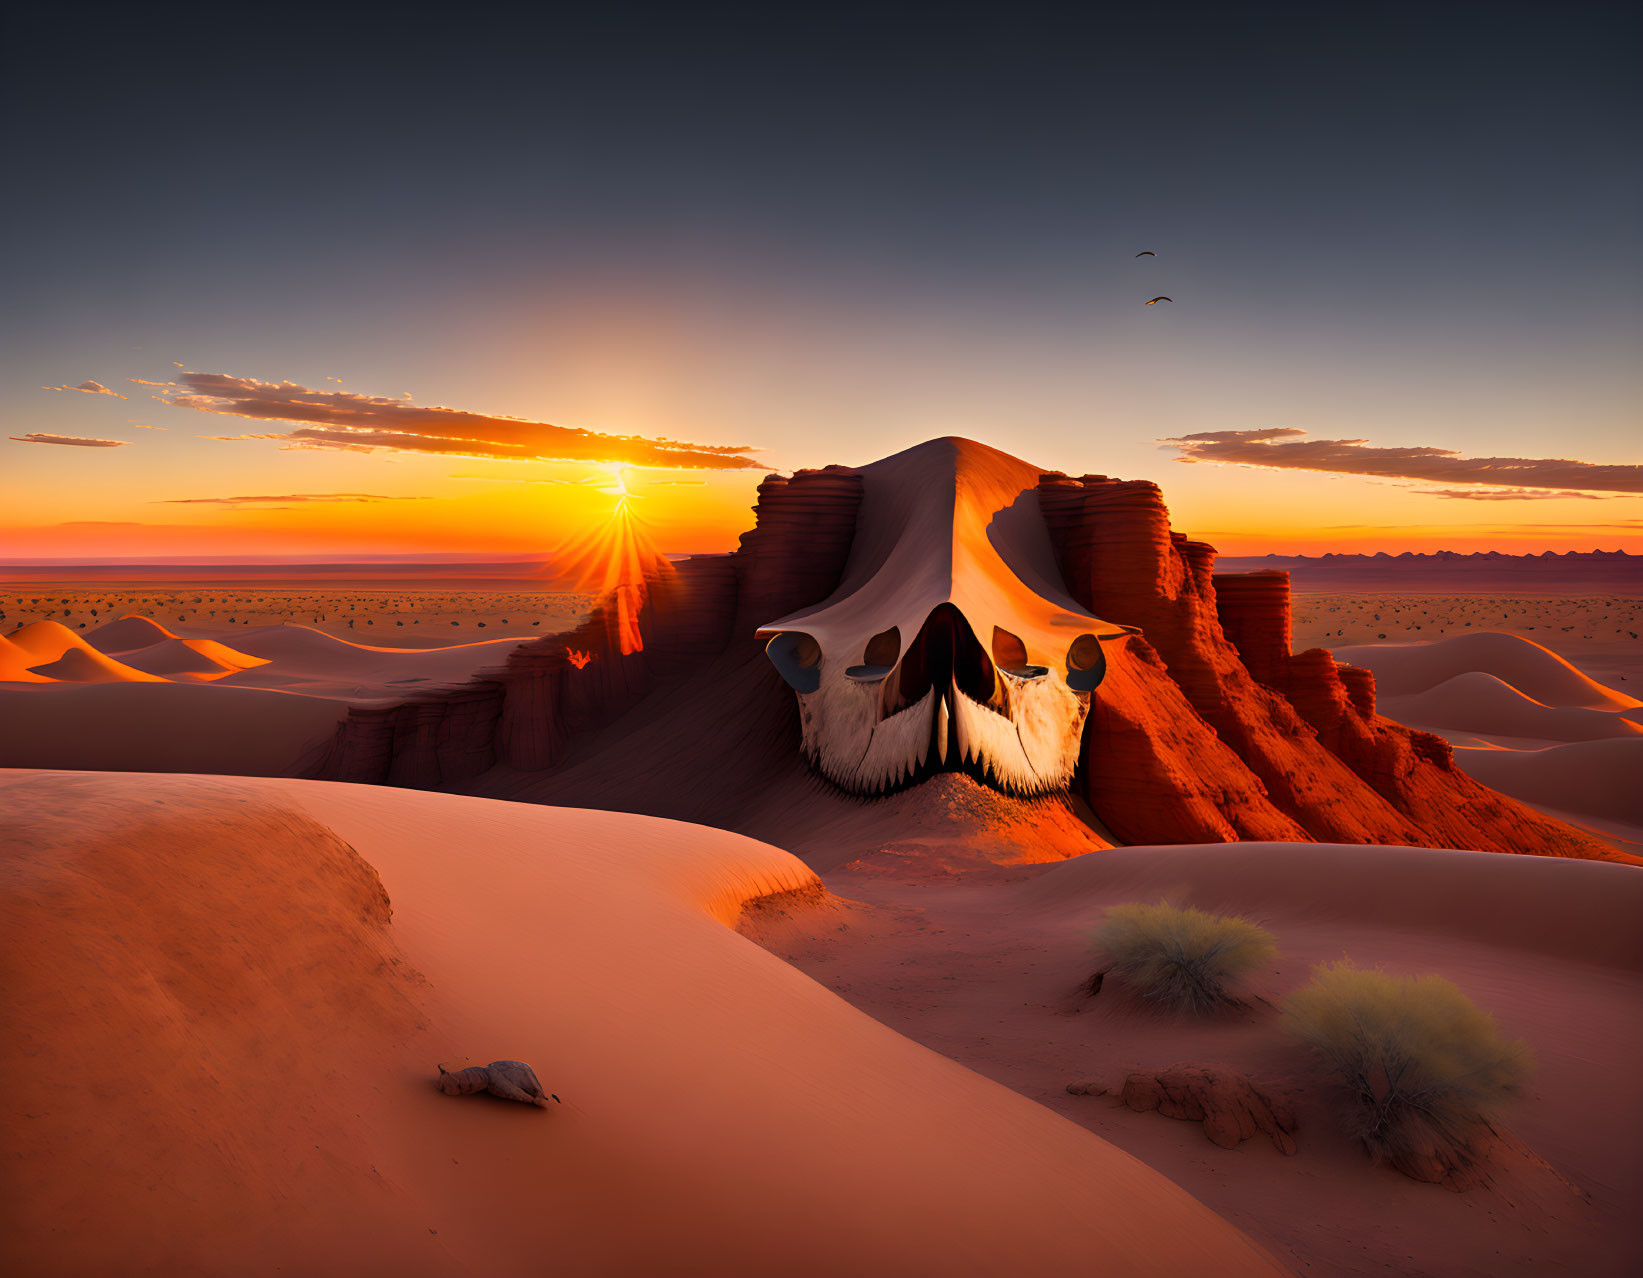 Sunset desert landscape with skull-shaped sand formation, dunes, vegetation, and birds.